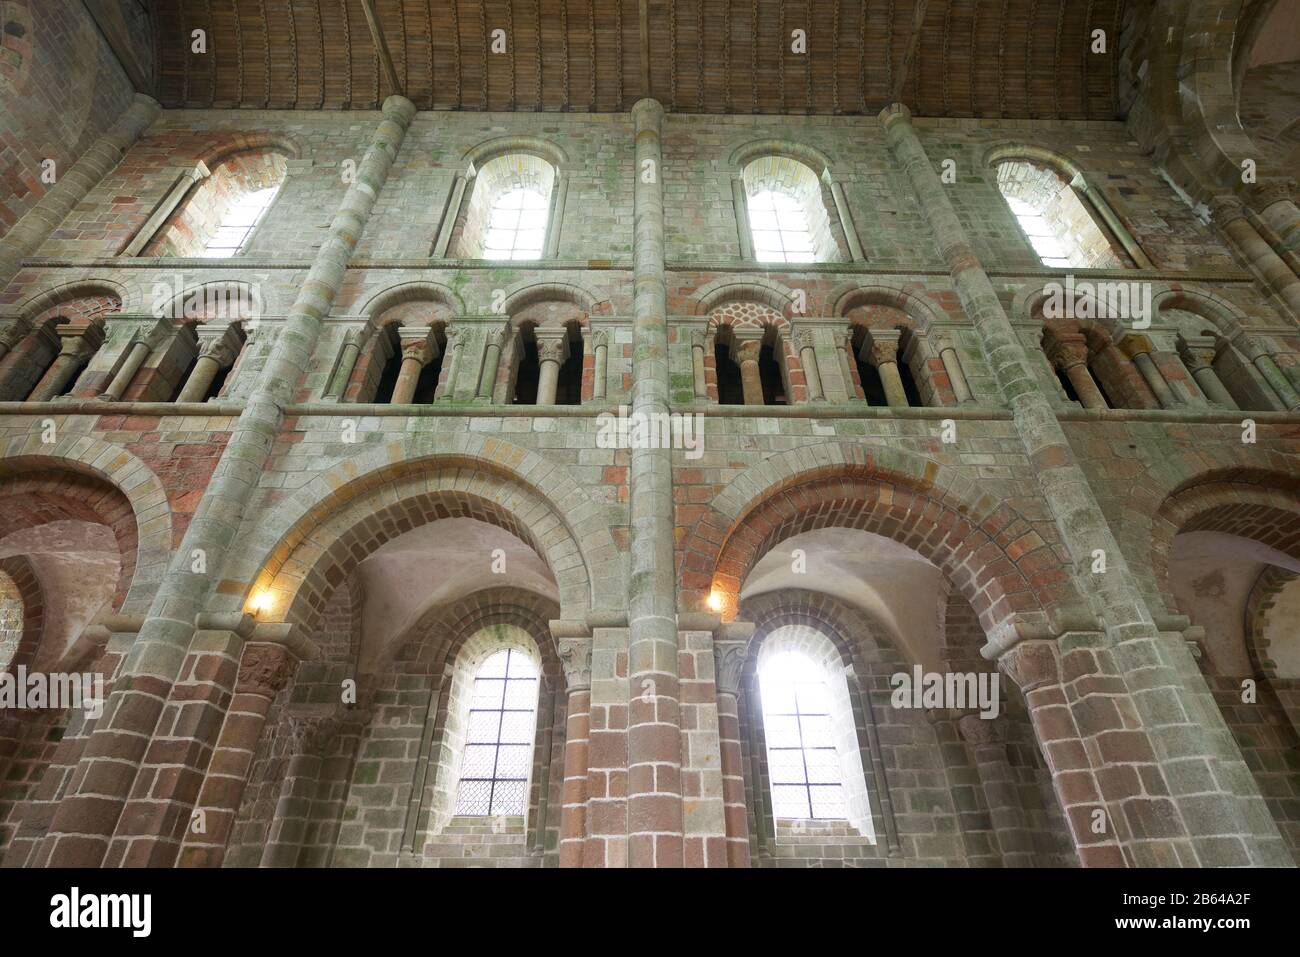 Mont Saint Michel, France - 28 août 2014 : vue intérieure de l'abbaye du Mont Saint Michel. Banque D'Images